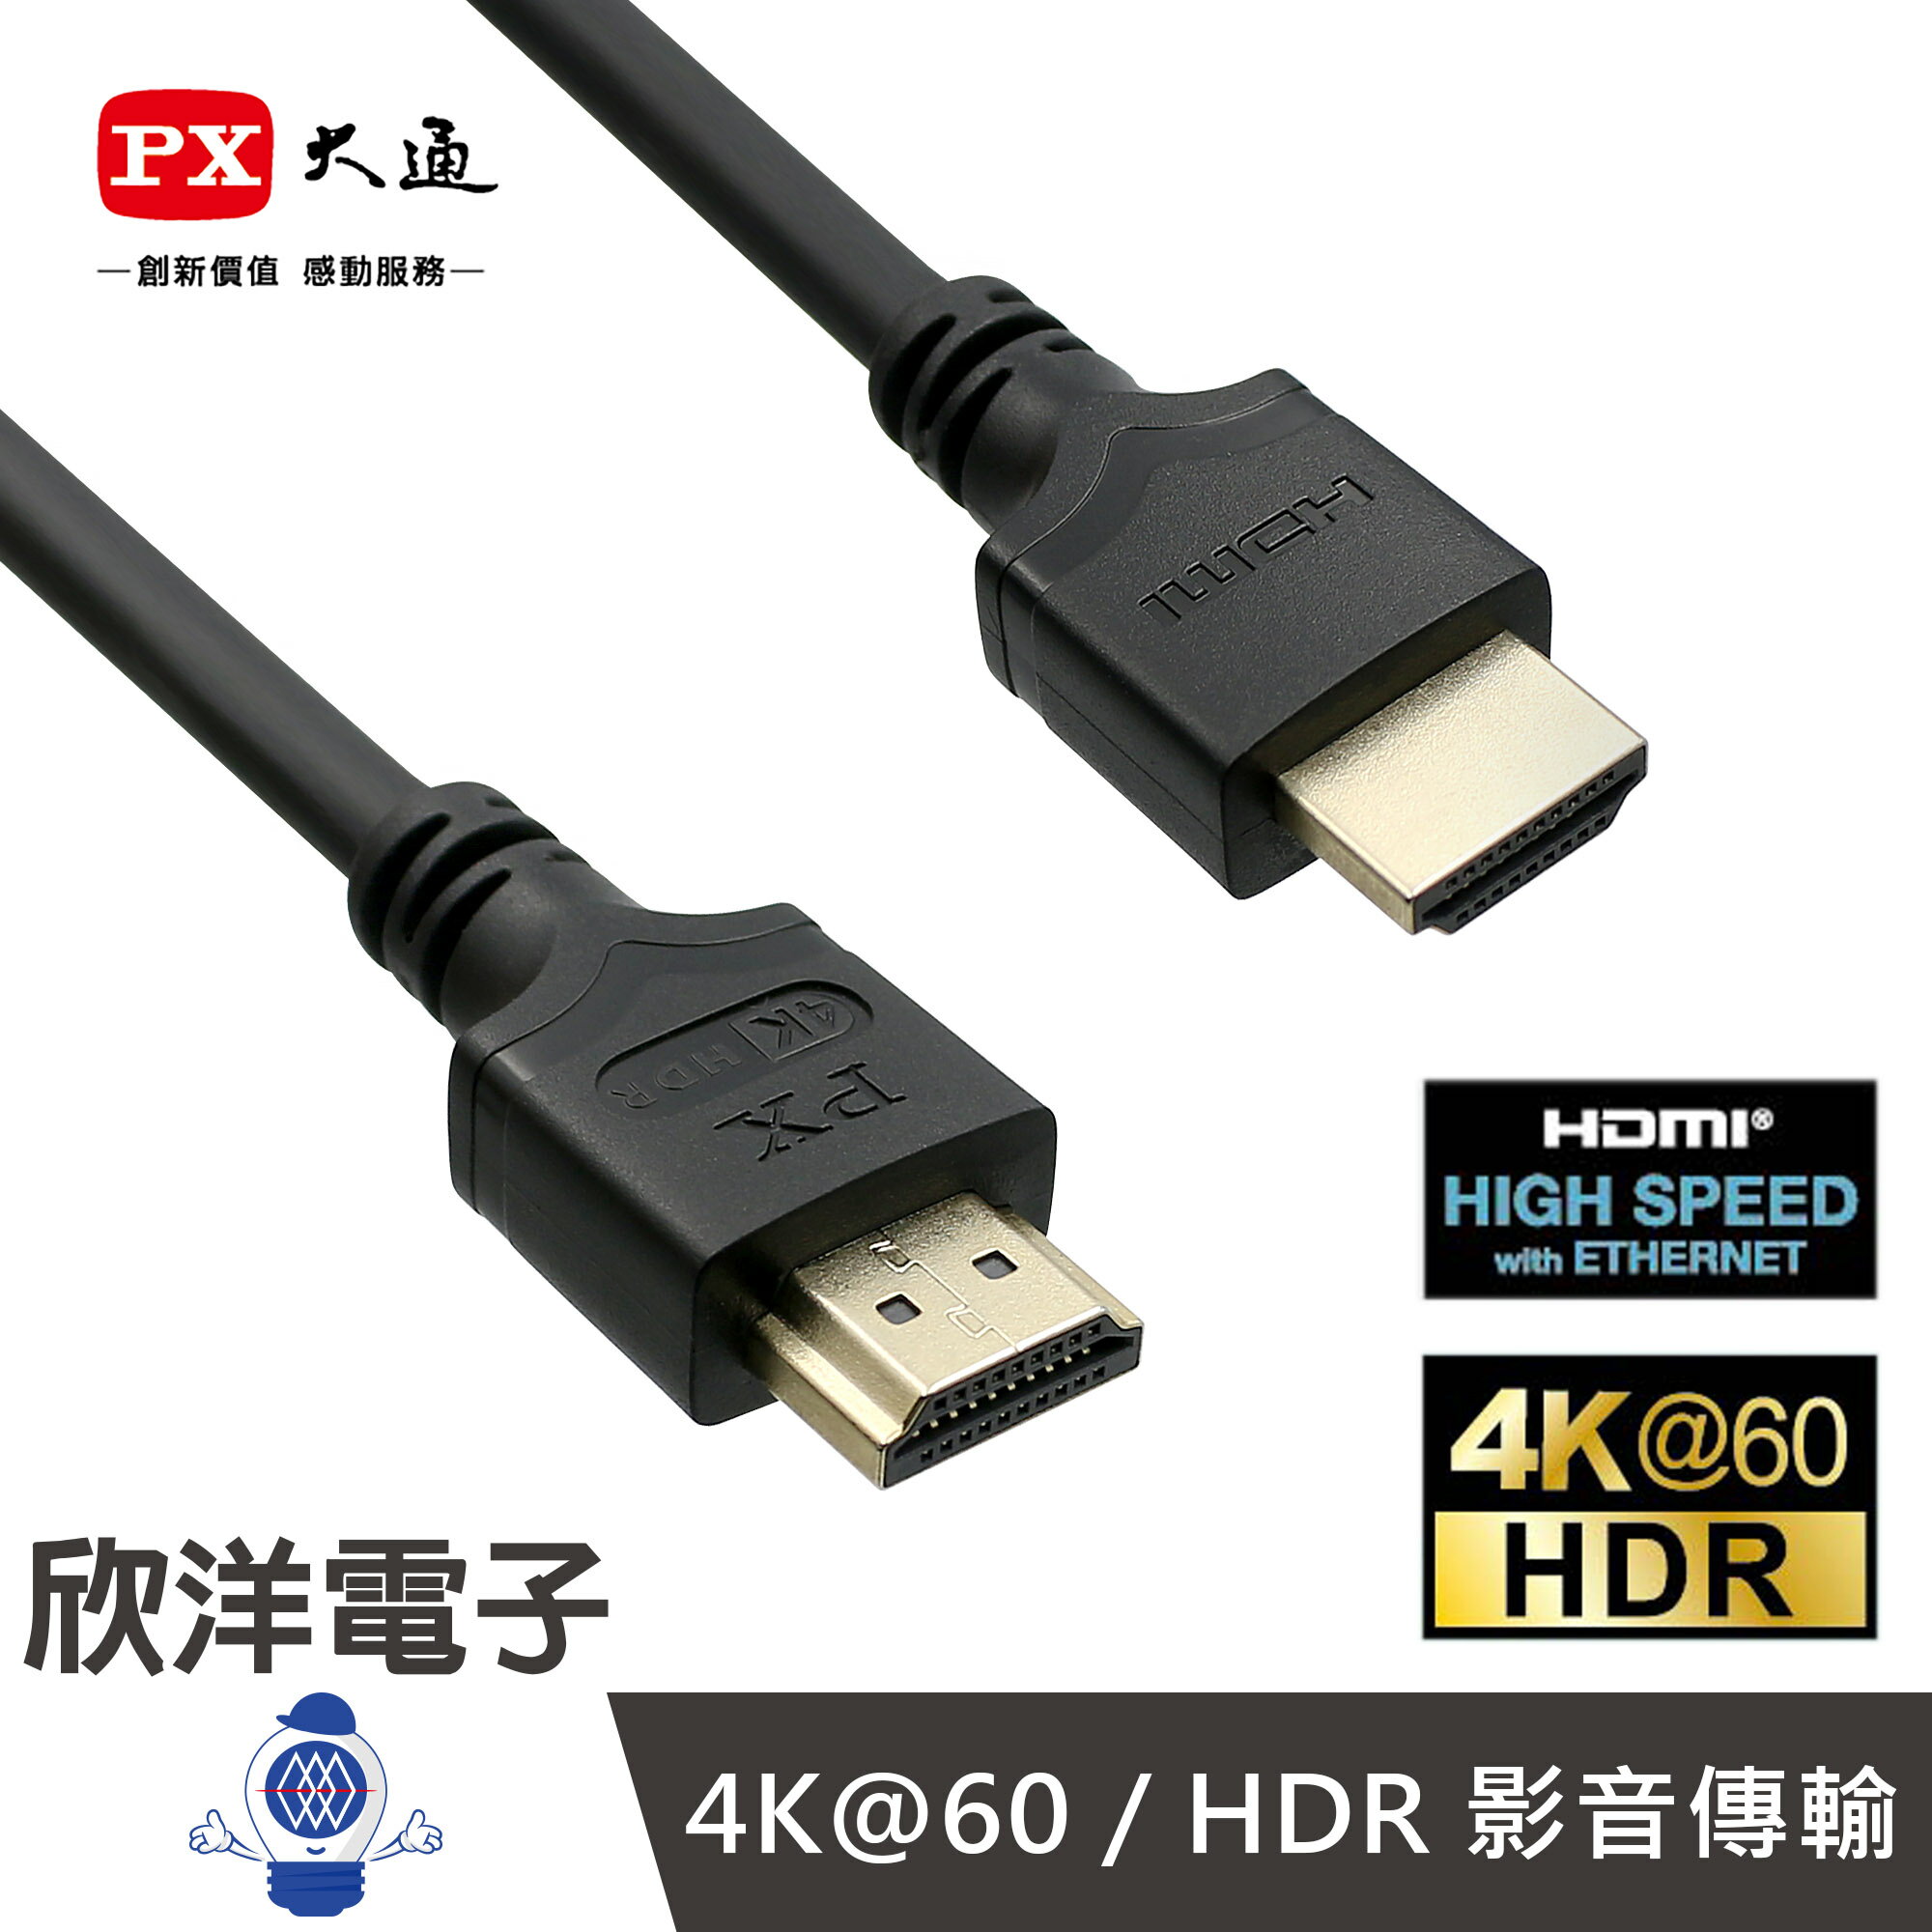 ※ 欣洋電子 ※ PX大通 HDMI線 高速乙太網HDMI線 2米 (HDMI-2MM) 高畫質訊號線 適用32~43吋以內電視 螢幕 電子材料